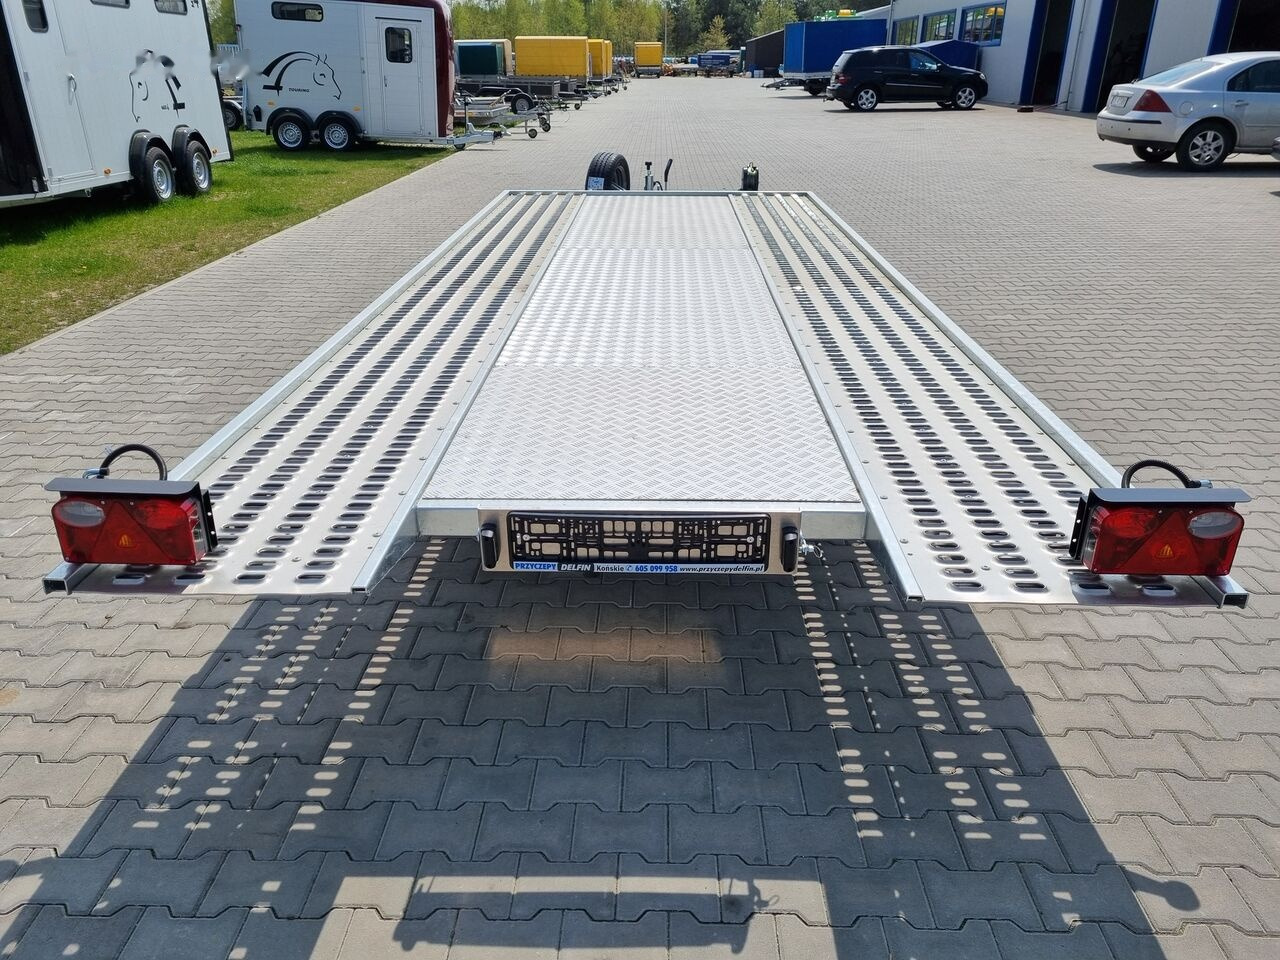 Lorries PLI-35 5021 car trailer 3.5t GVW tilting platform 500 x 210 cm - Autotransporter trailer: picture 2